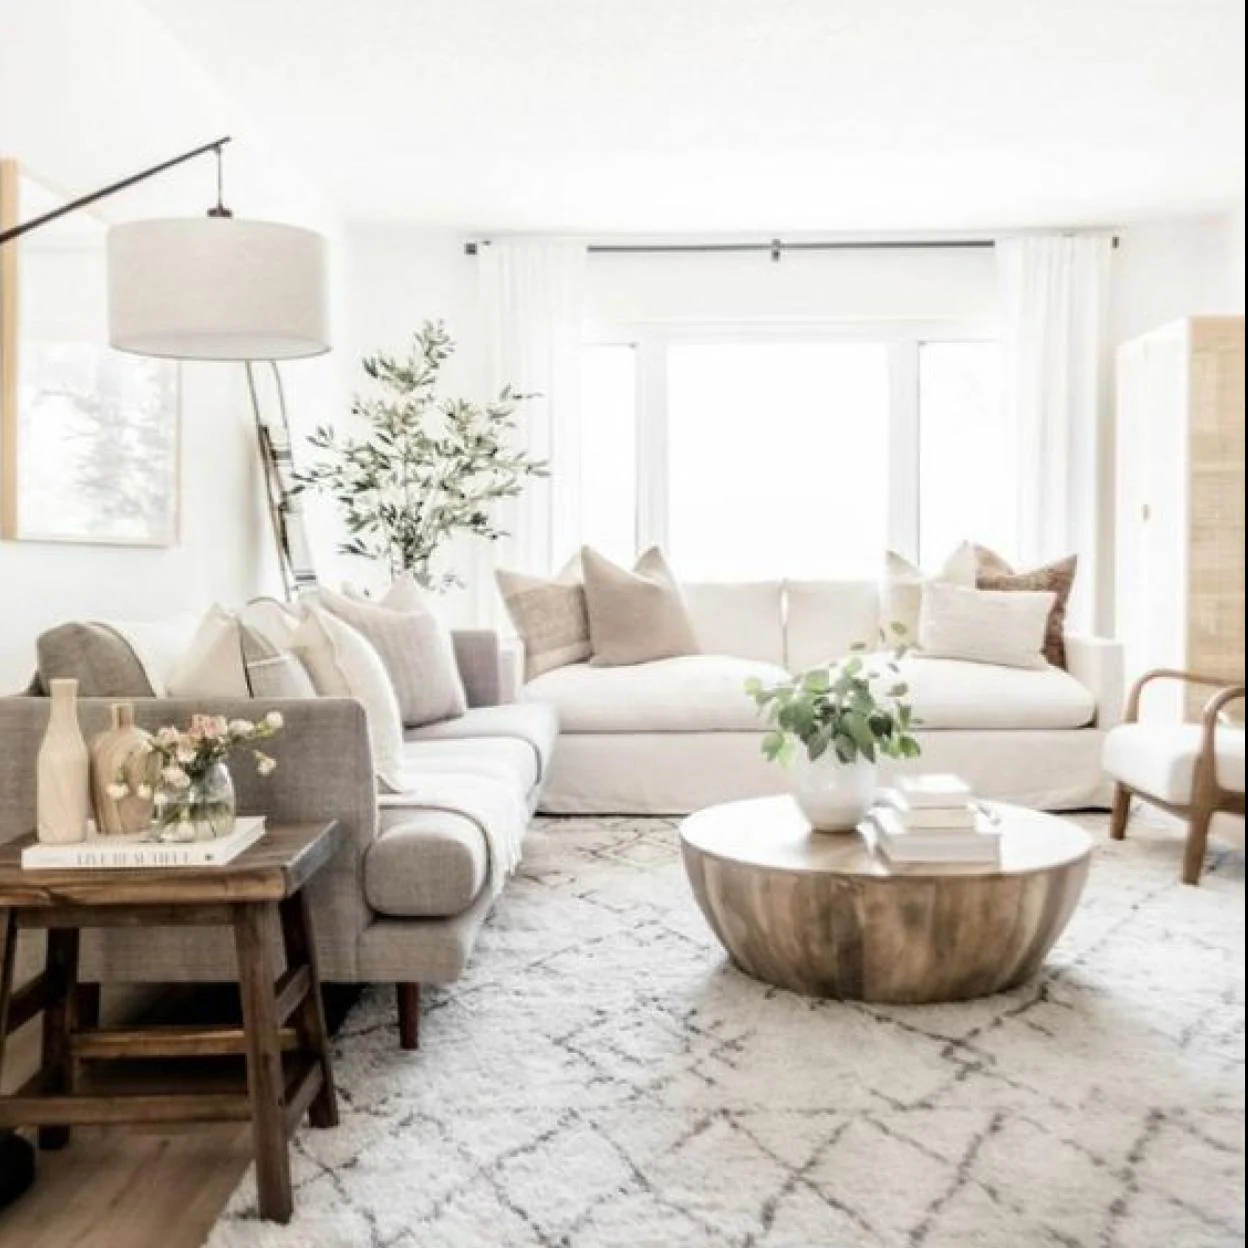 El nuevo mueble Ikea es ideal para un salón estiloso y de tendencia